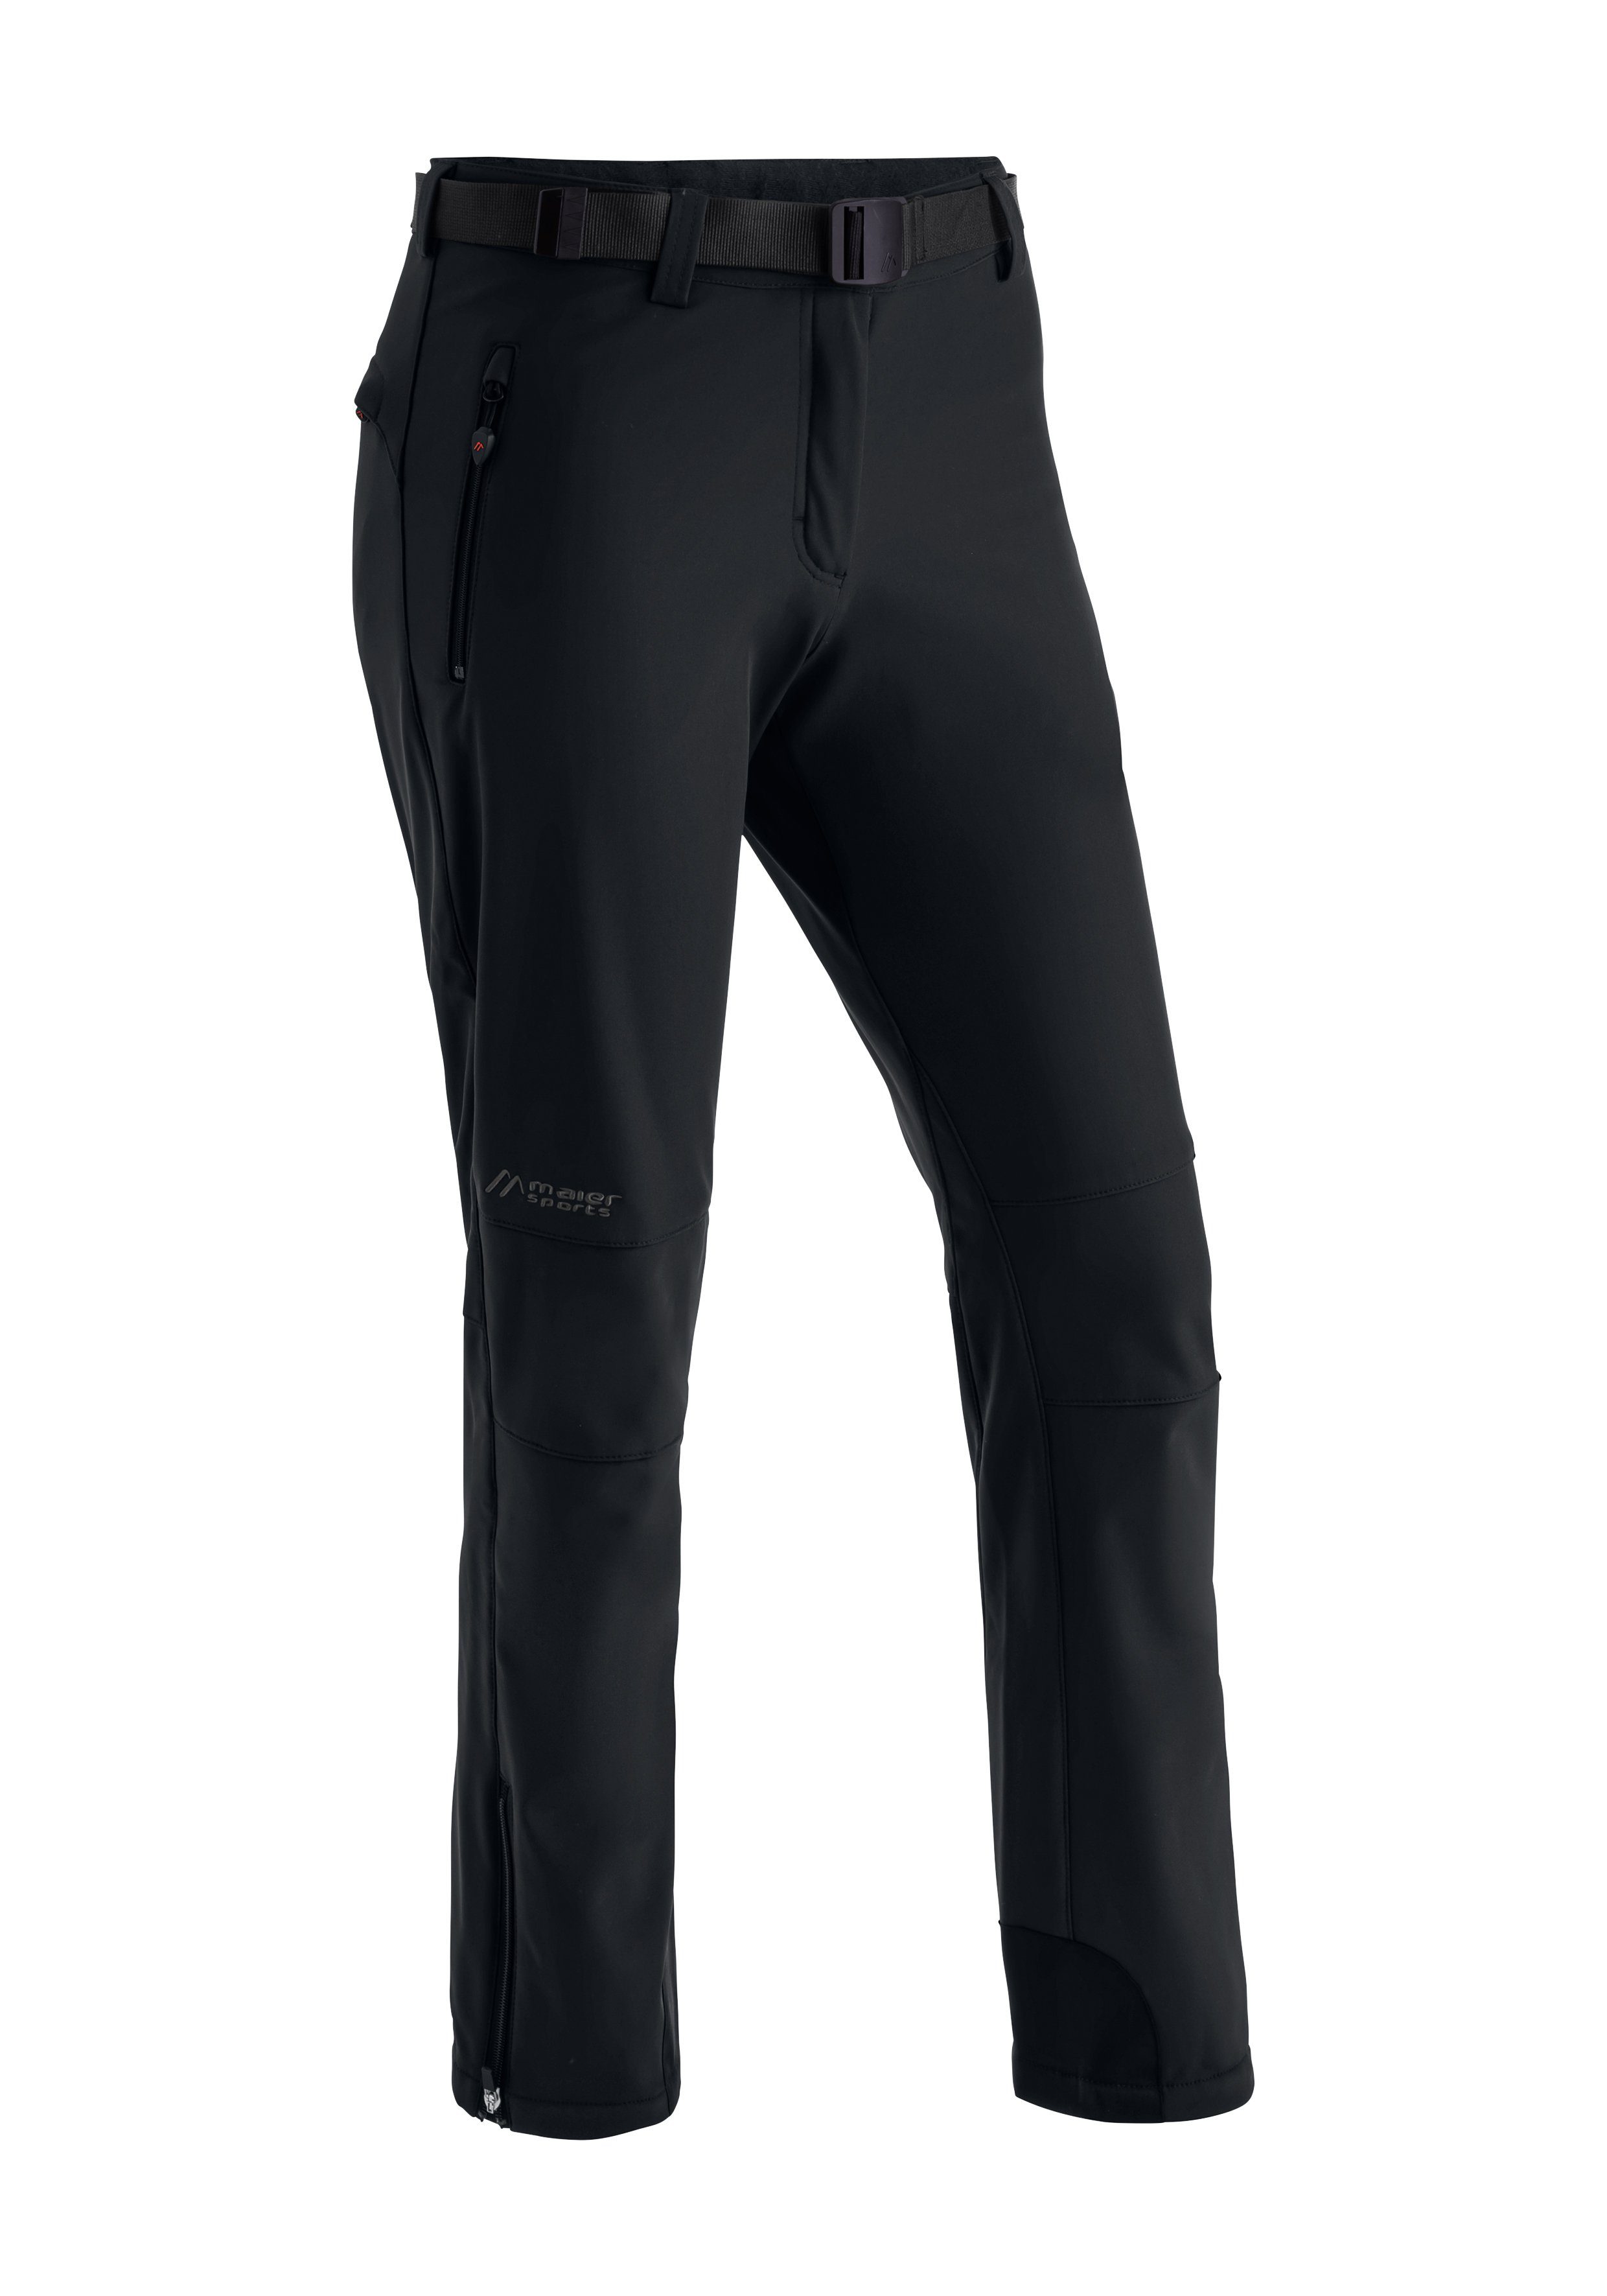 und Maier schwarz winddicht Sports Tech Warme Softshellhose, elastisch Funktionshose Pants W